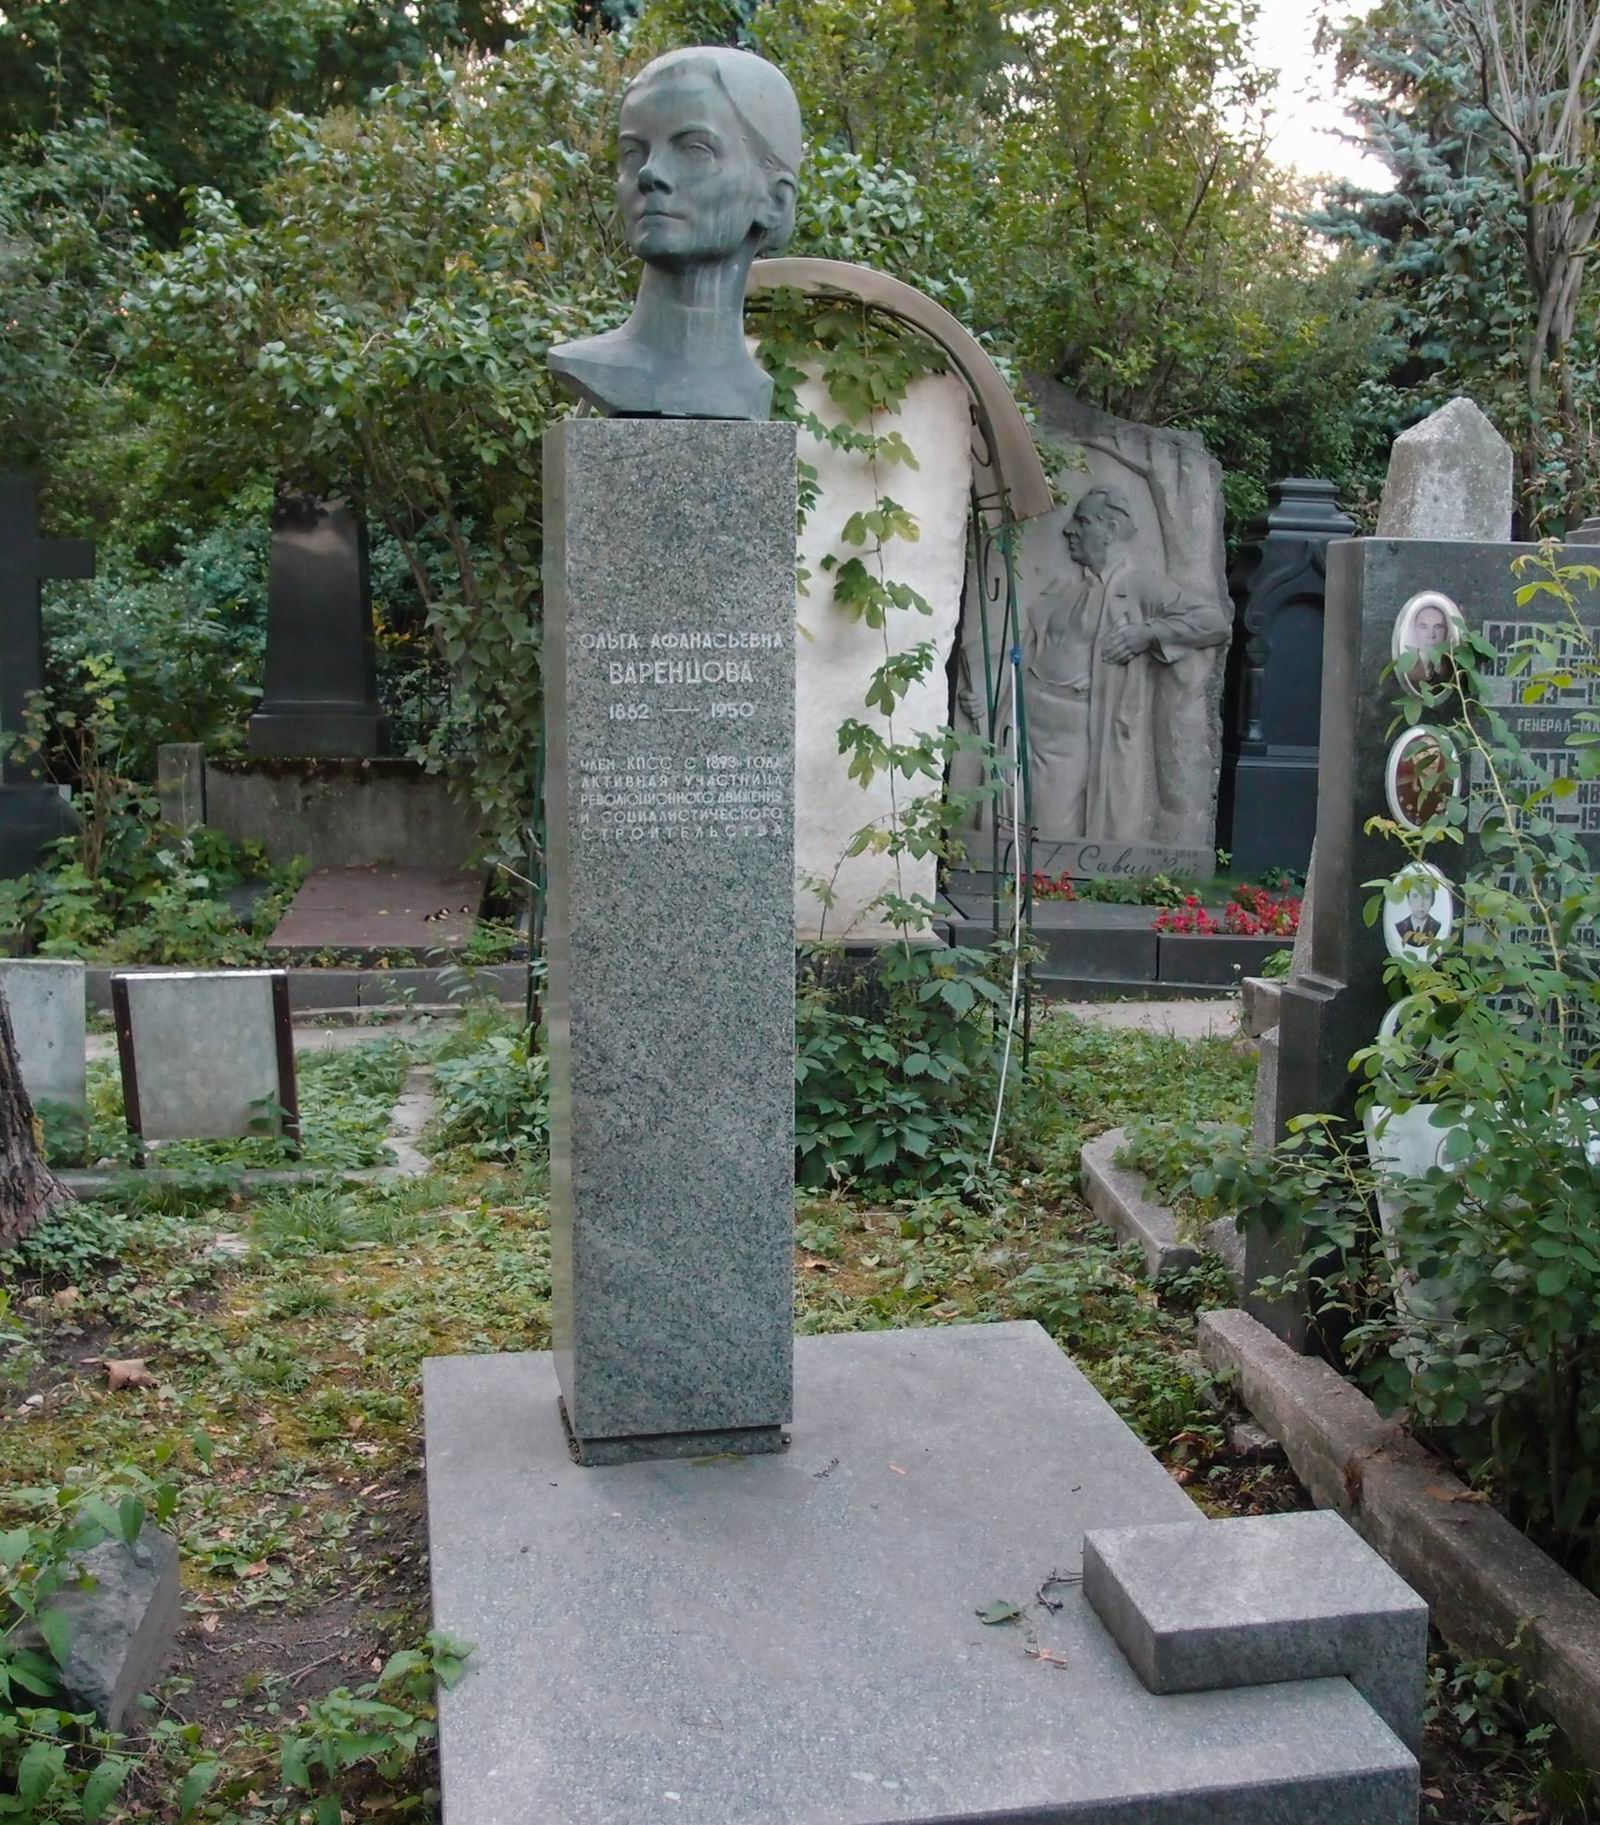 Памятник на могиле Варенцовой О.А. (1862–1950), на Новодевичьем кладбище (2–41–9). Нажмите левую кнопку мыши чтобы увидеть фрагмент памятника.